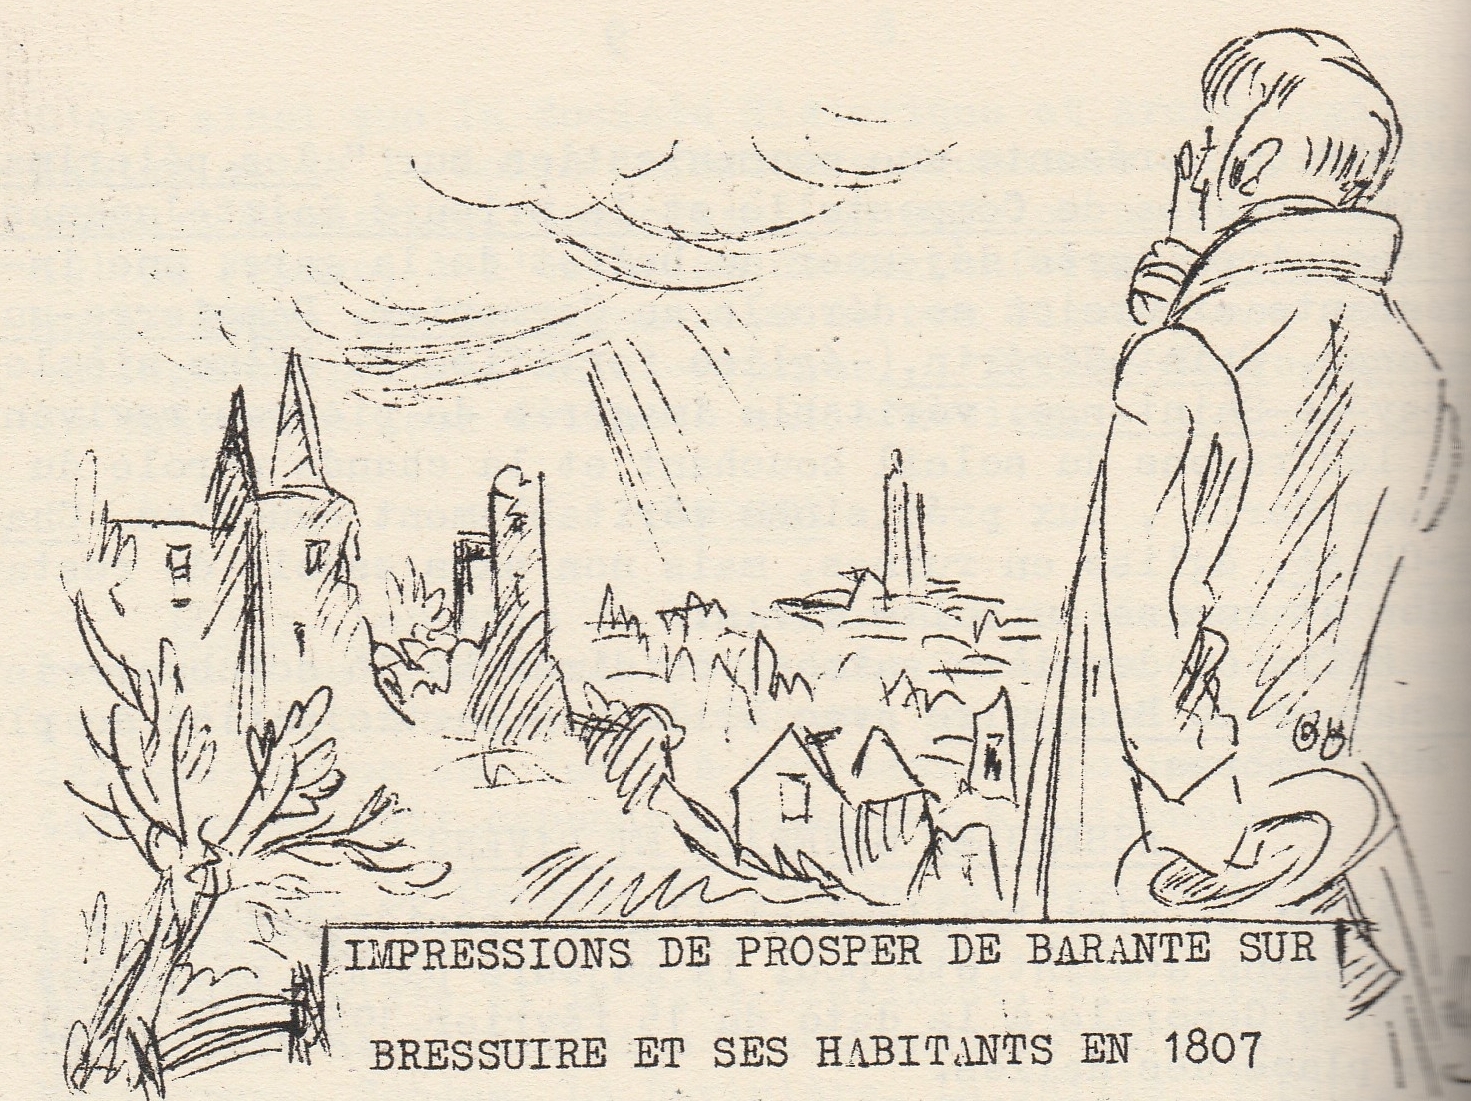 You are currently viewing Impressions de Prosper de Barante sur Bressuire et ses habitants en 1807 (2)